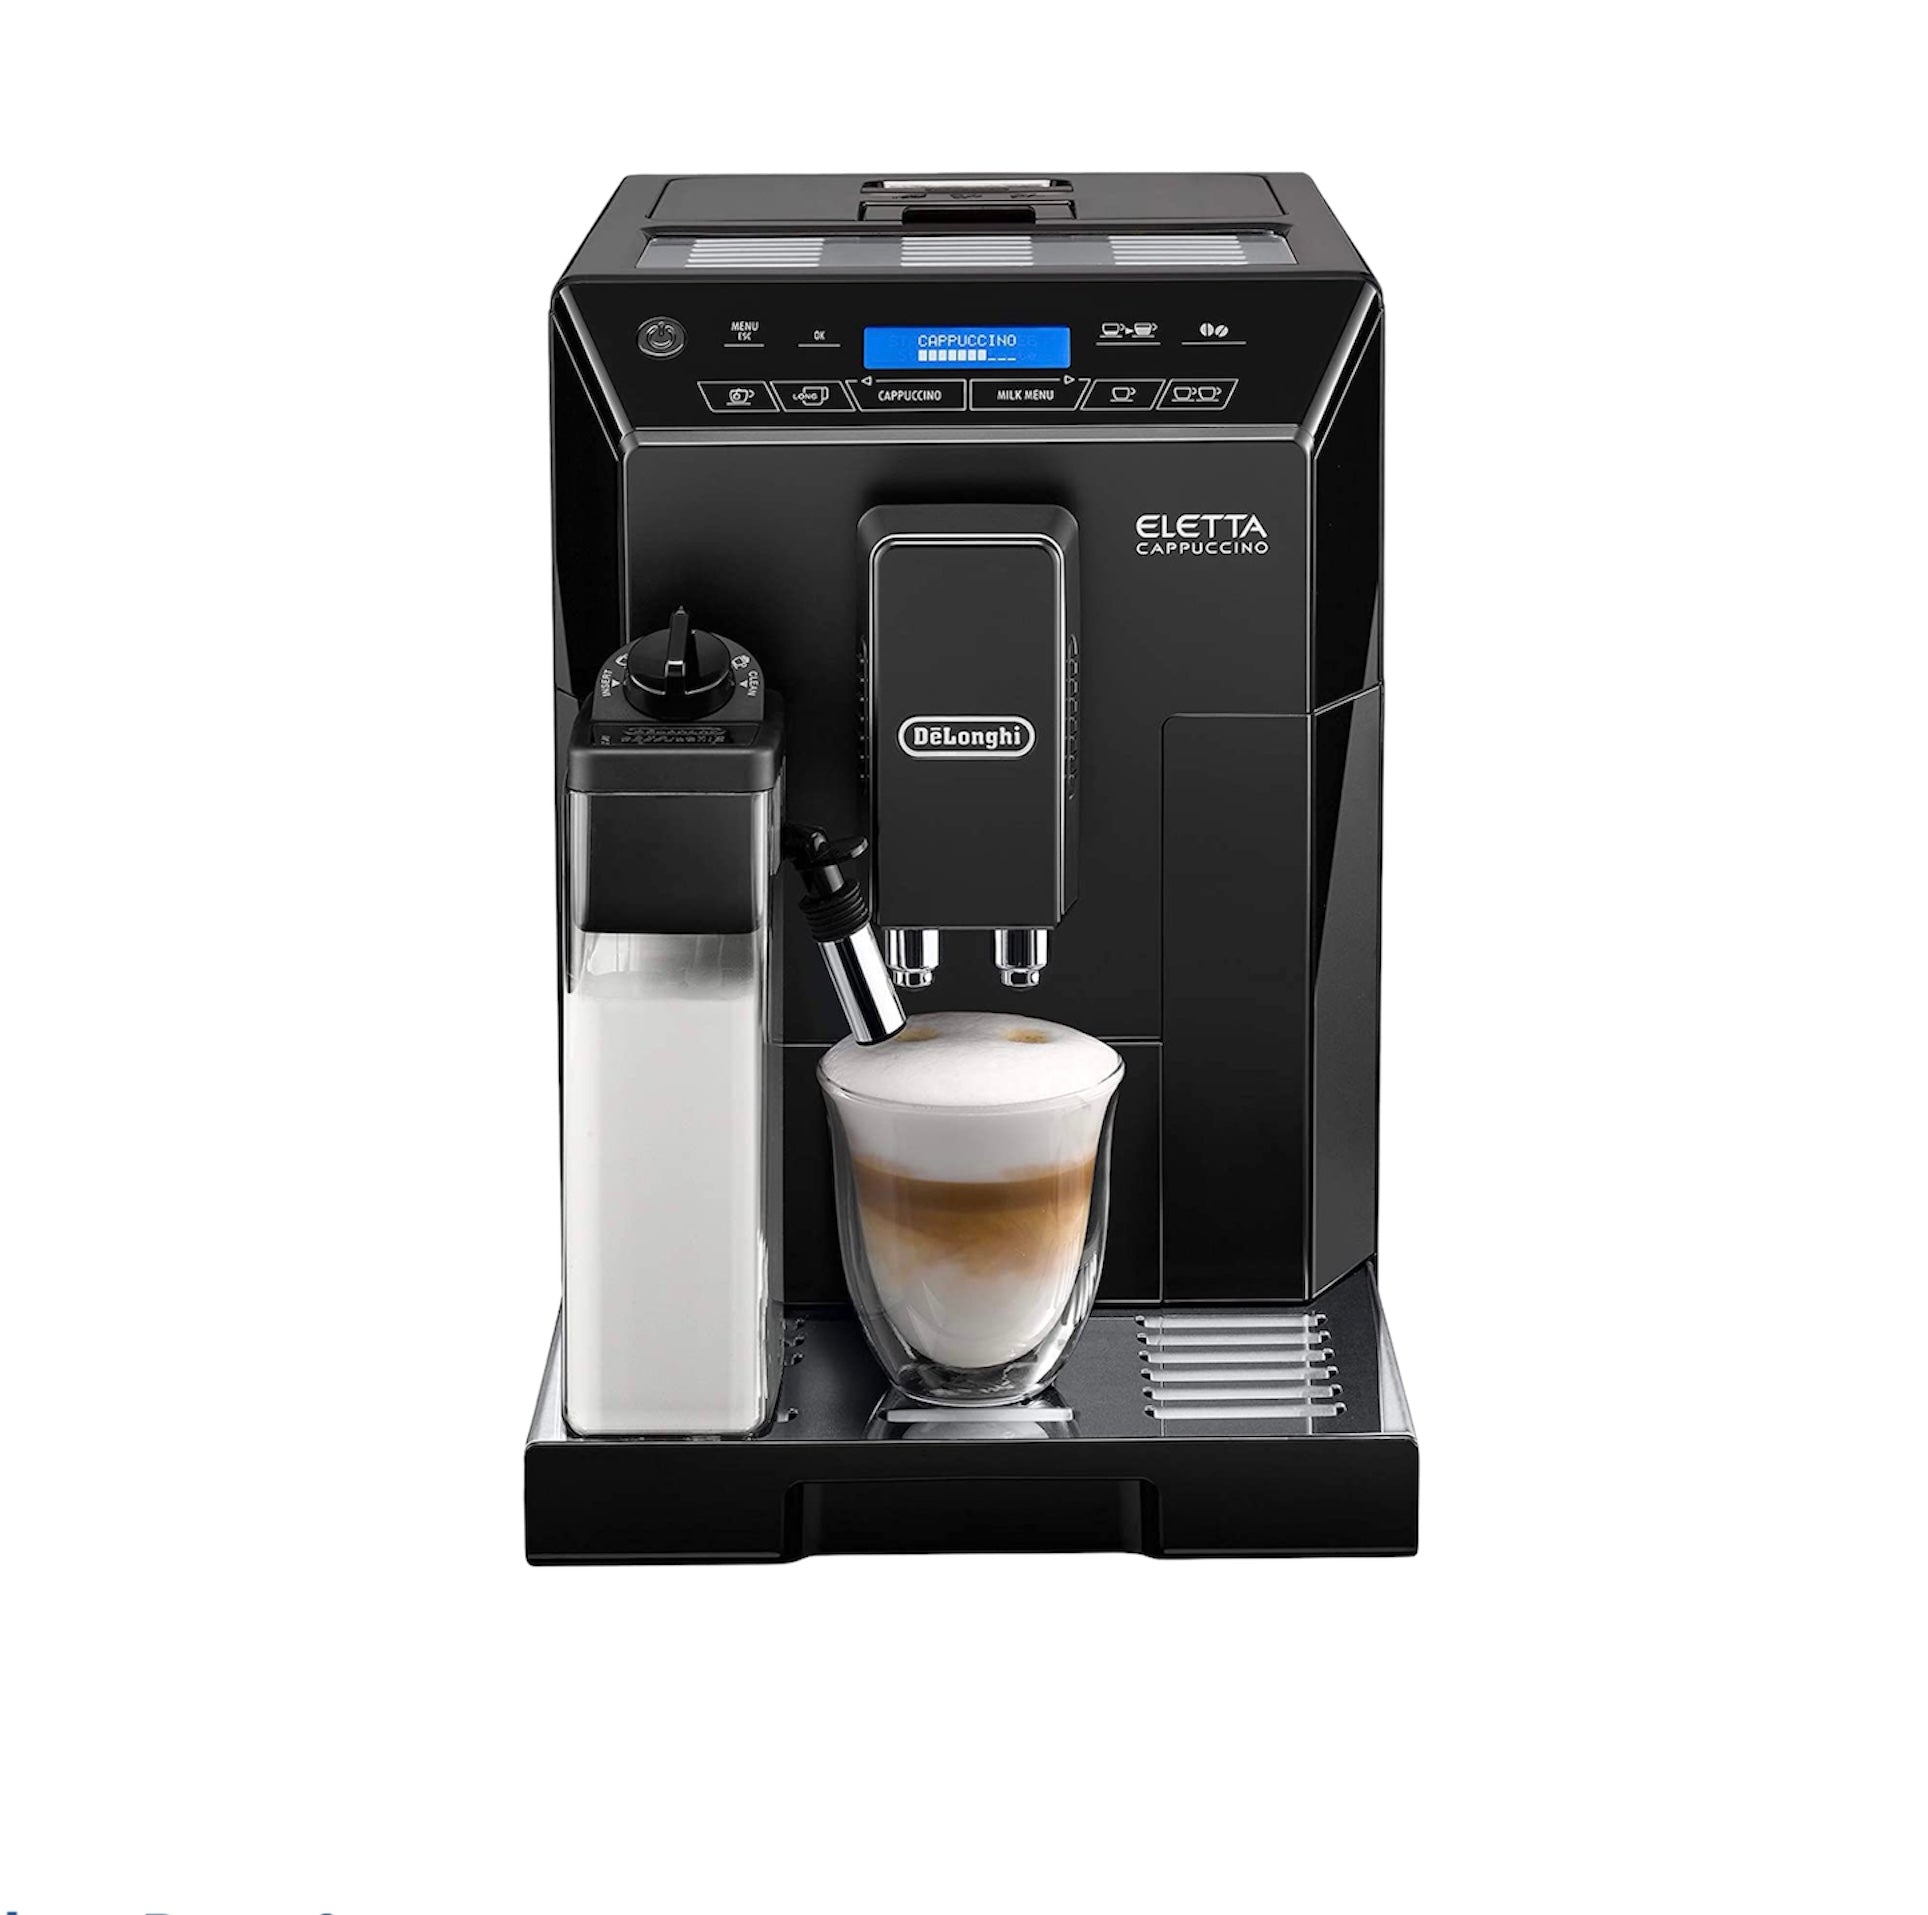 Delonghi Eletta Black Cappuccino Machine, Espresso machine with milk carafe and touch pannel.